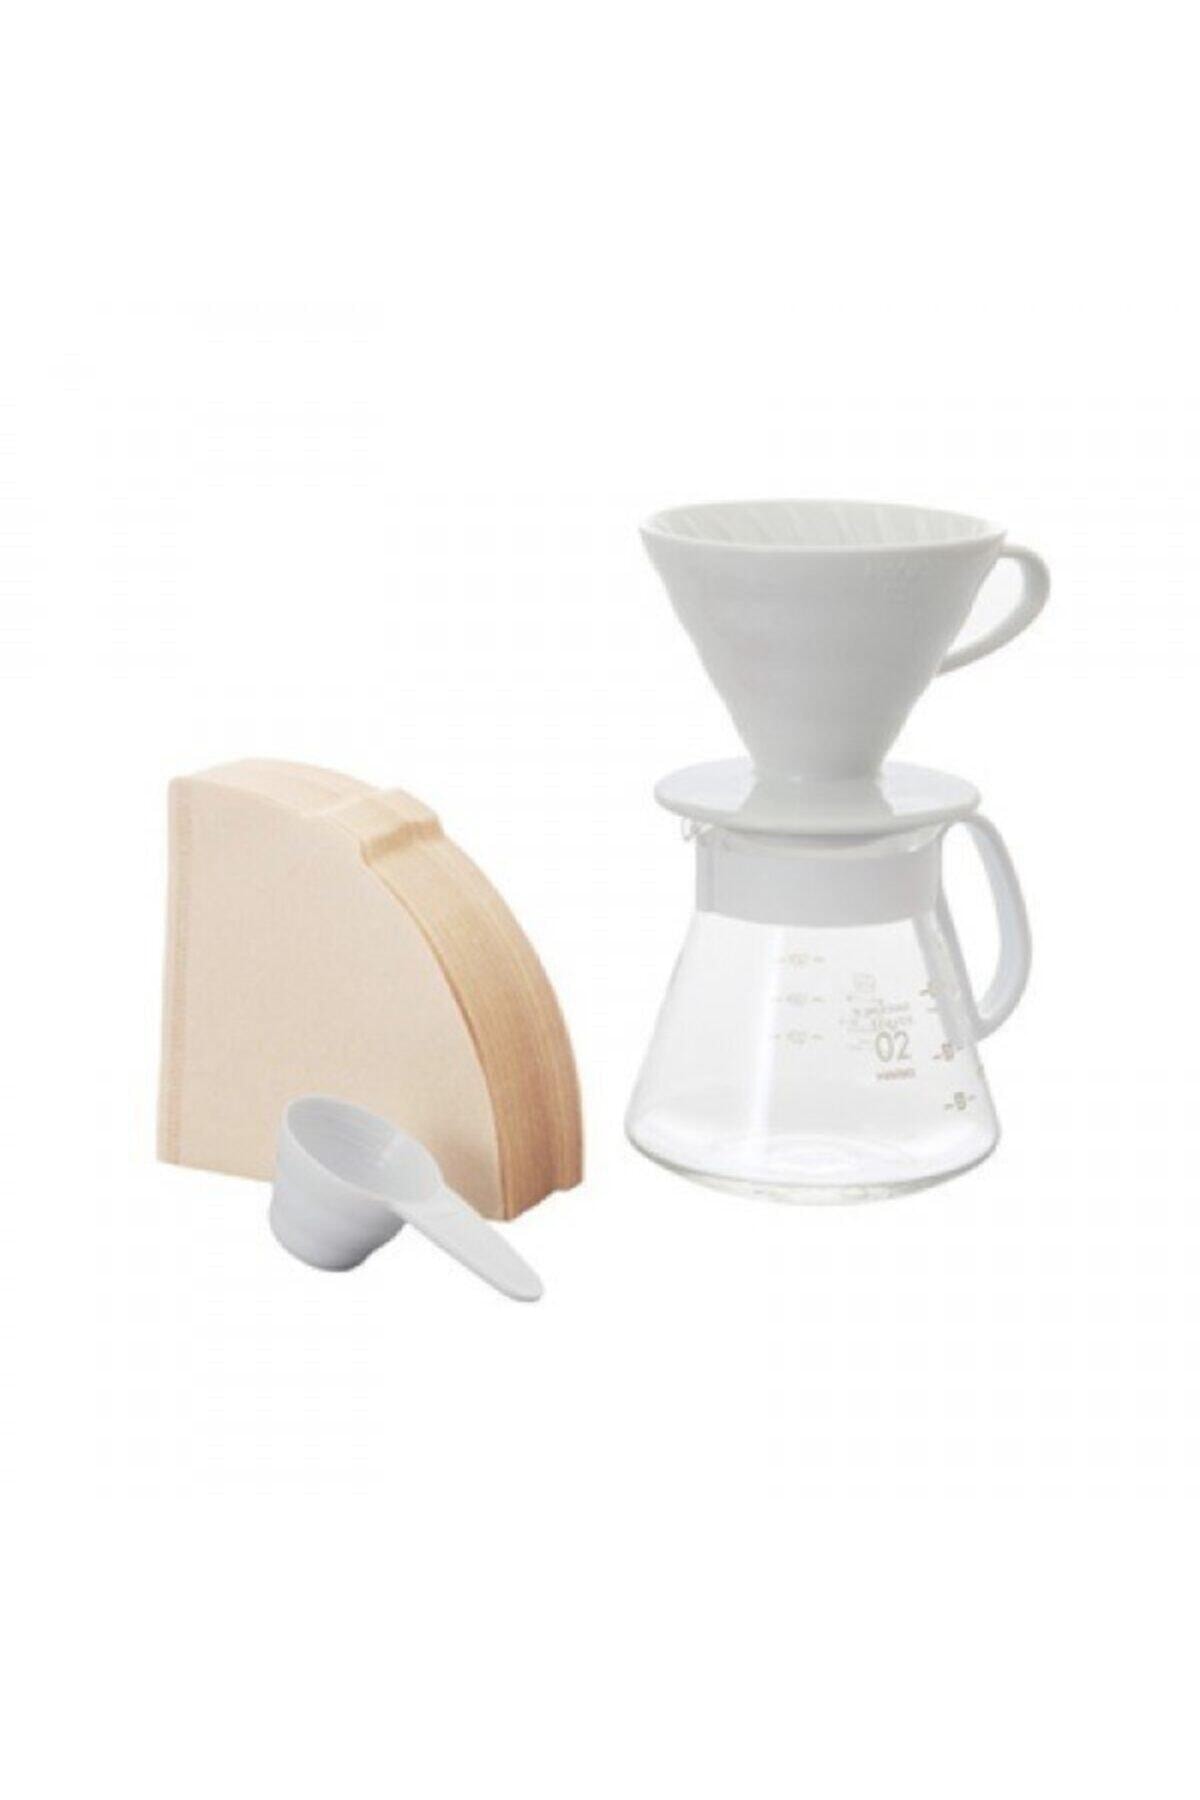 Hario V60 02 Seramik Kahve Demleme Seti Beyaz